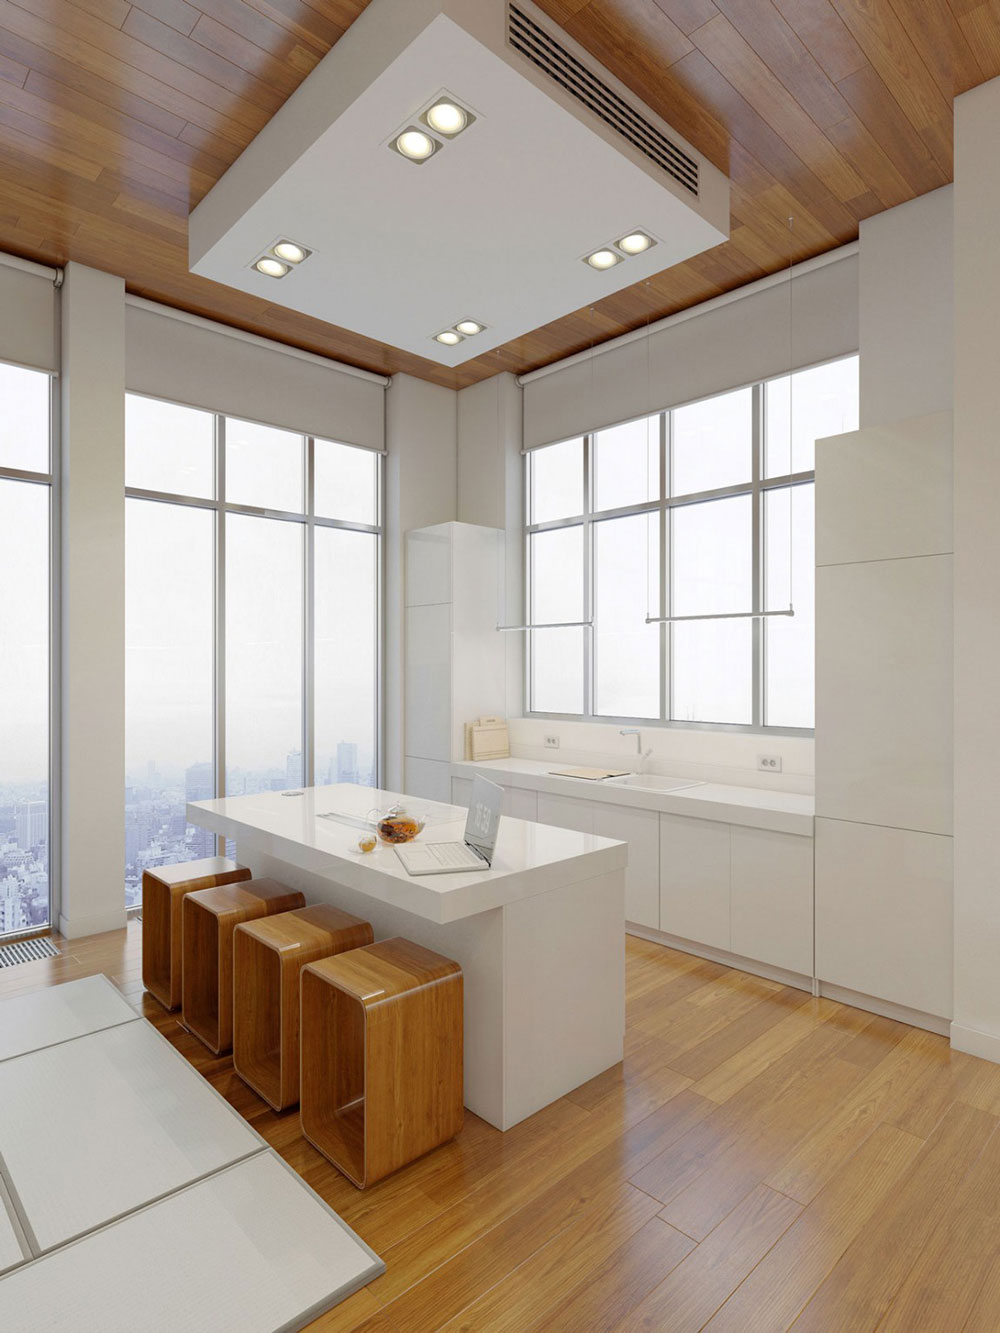 Lovely-Kitchen-Interiors-With-White-Cabinets-4 Vacker köksinredning med vita skåp